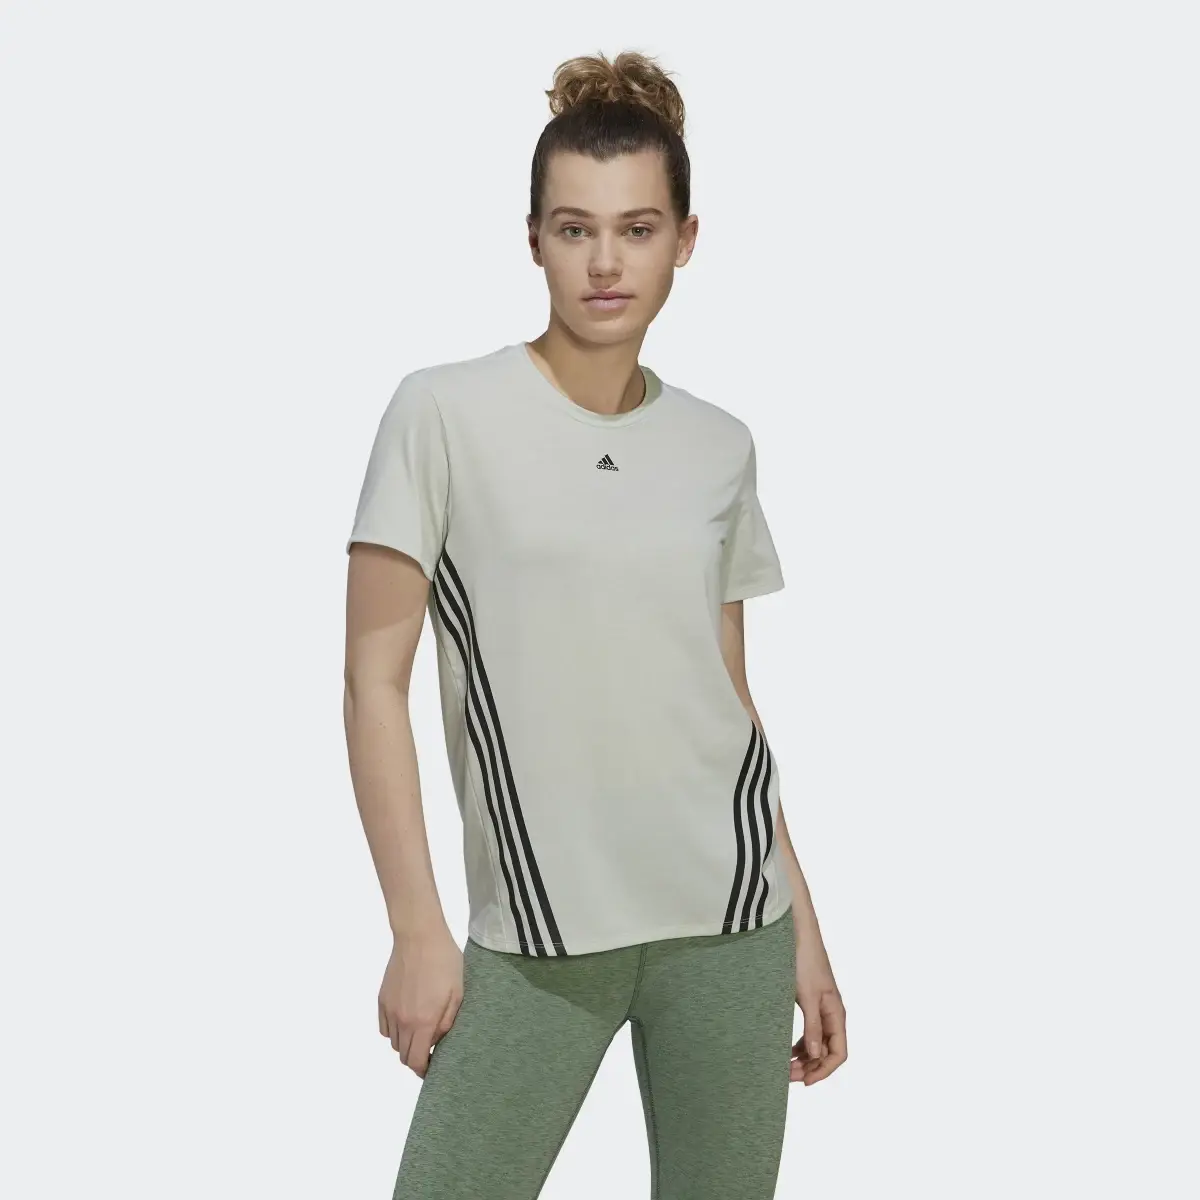 Adidas T-shirt Train Icons 3-Stripes. 2